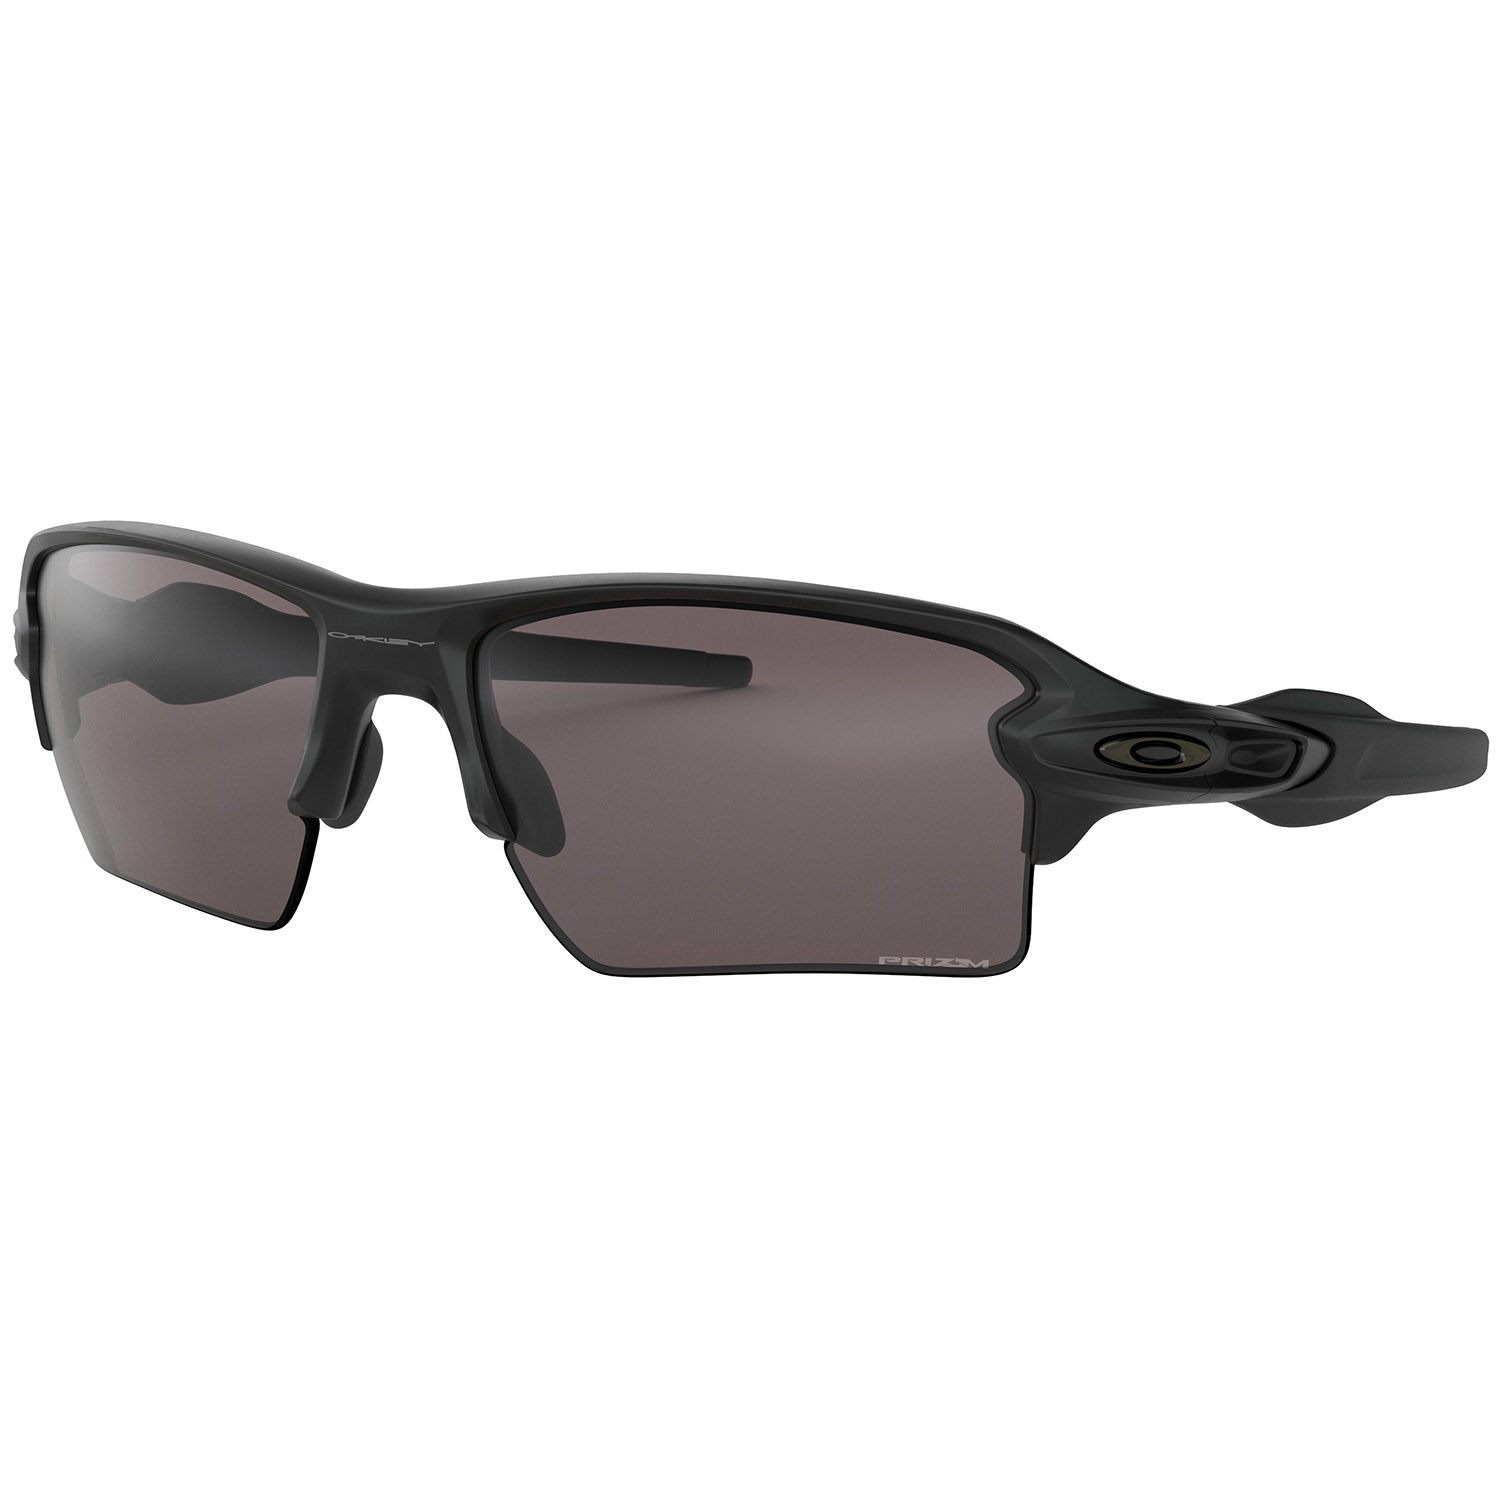 Солнцезащитные очки Oakley Flak 2.0 XL, черный